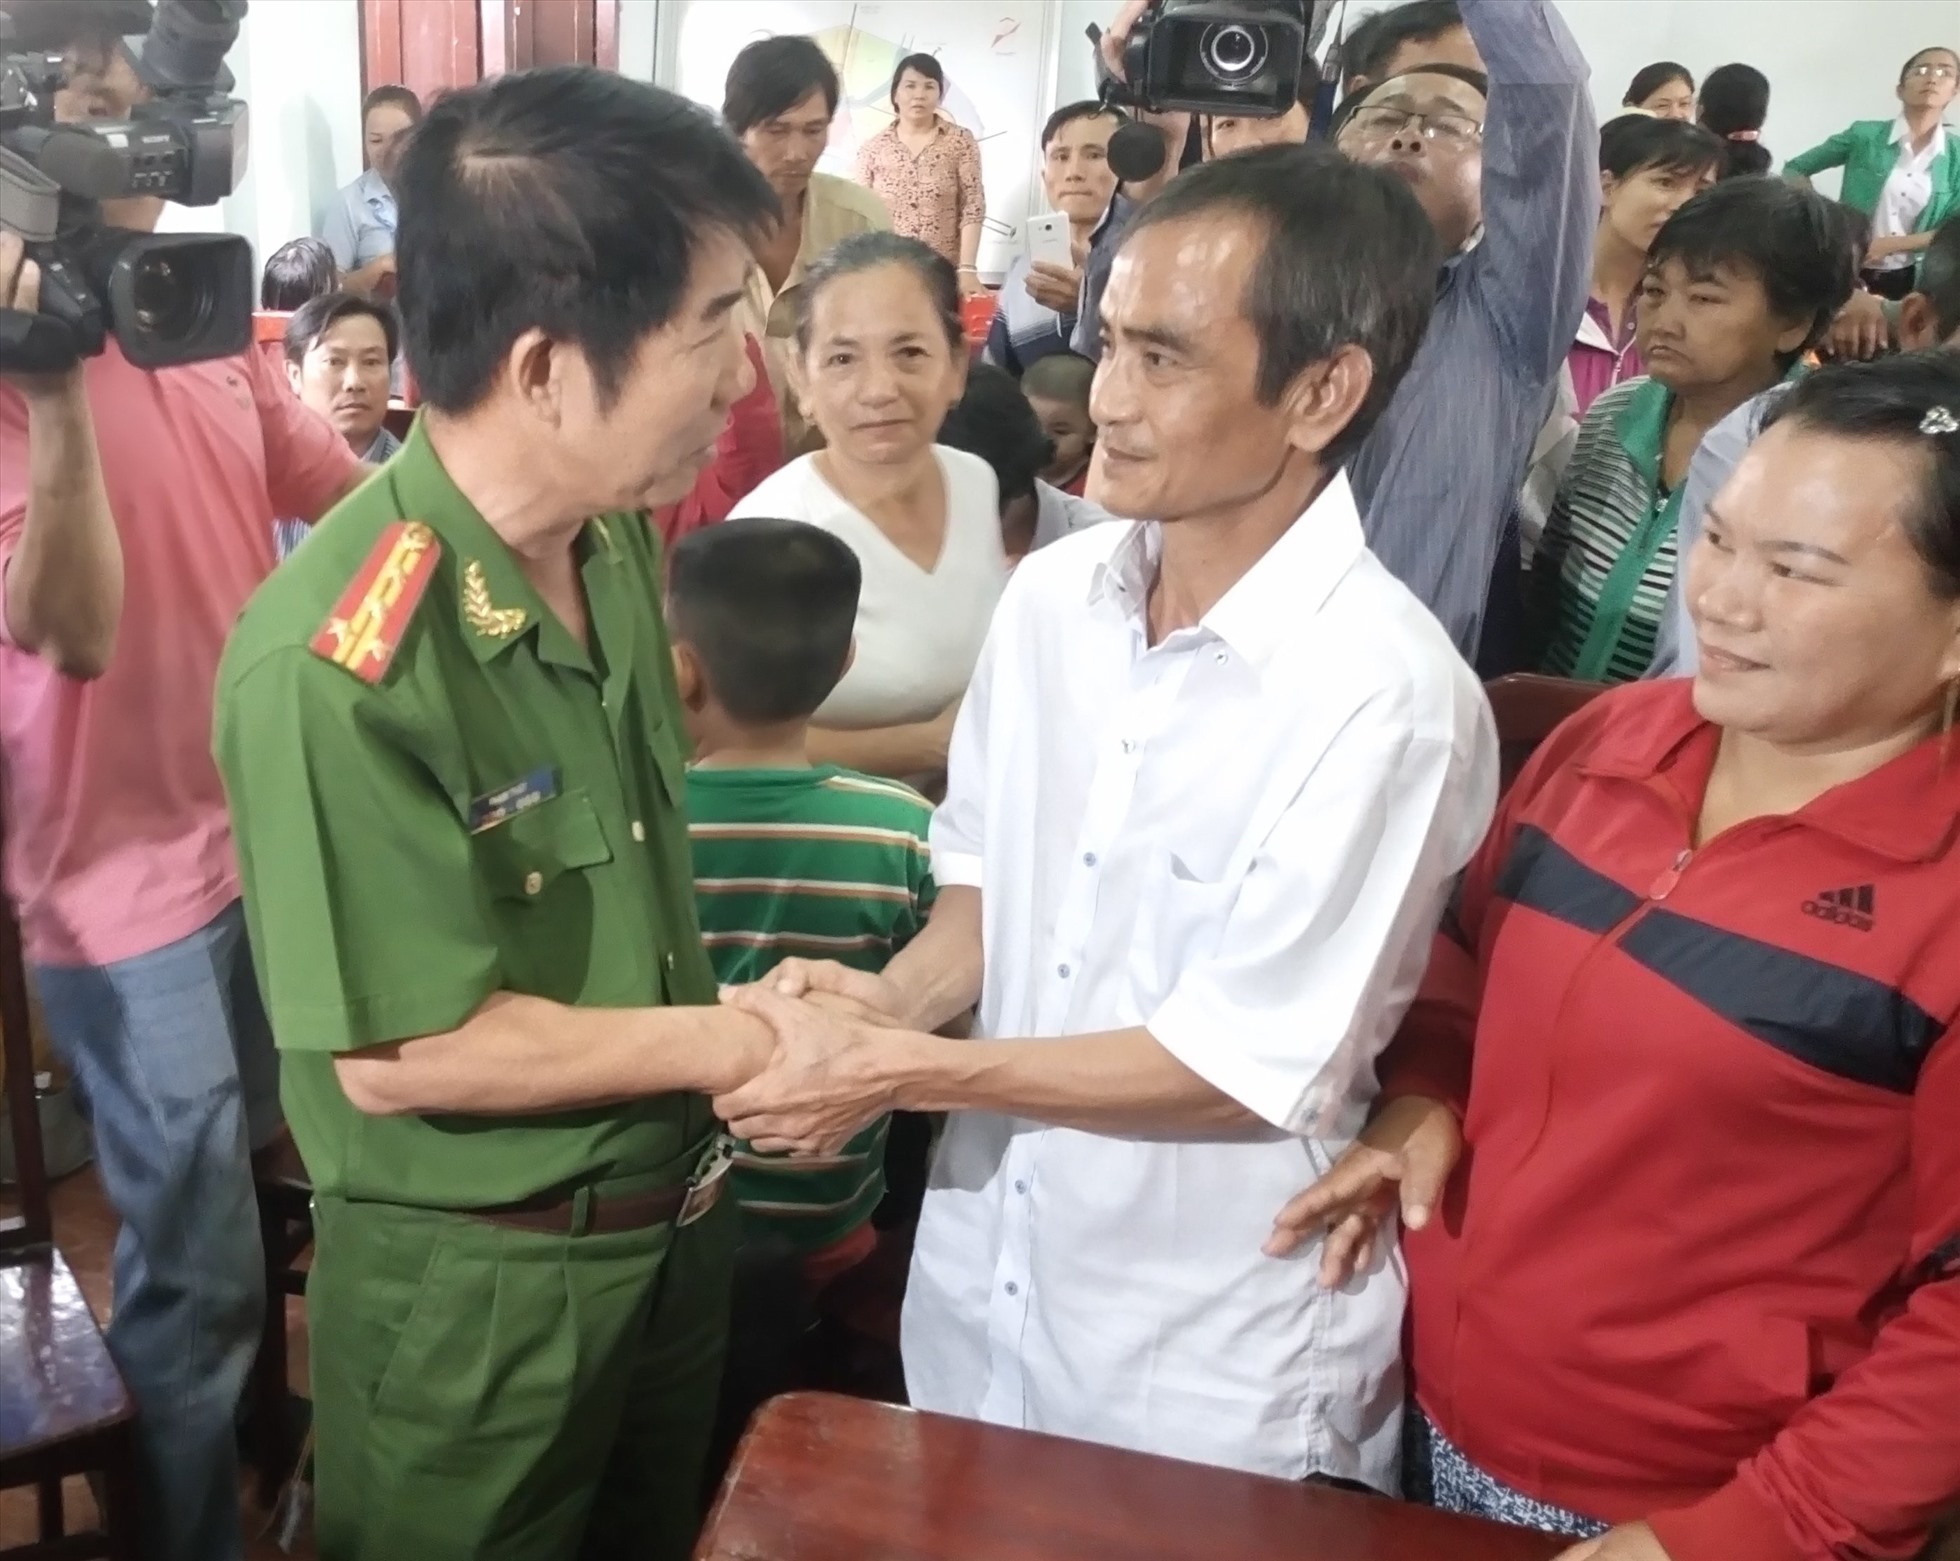 Đại tá Phạm Thật, Thủ trưởng Cơ quan CSĐT Công an Bình Thuận bắt tay ông Huỳnh Văn Nén trong ngày công bố xin lỗi ông Nén. Ảnh: CTV